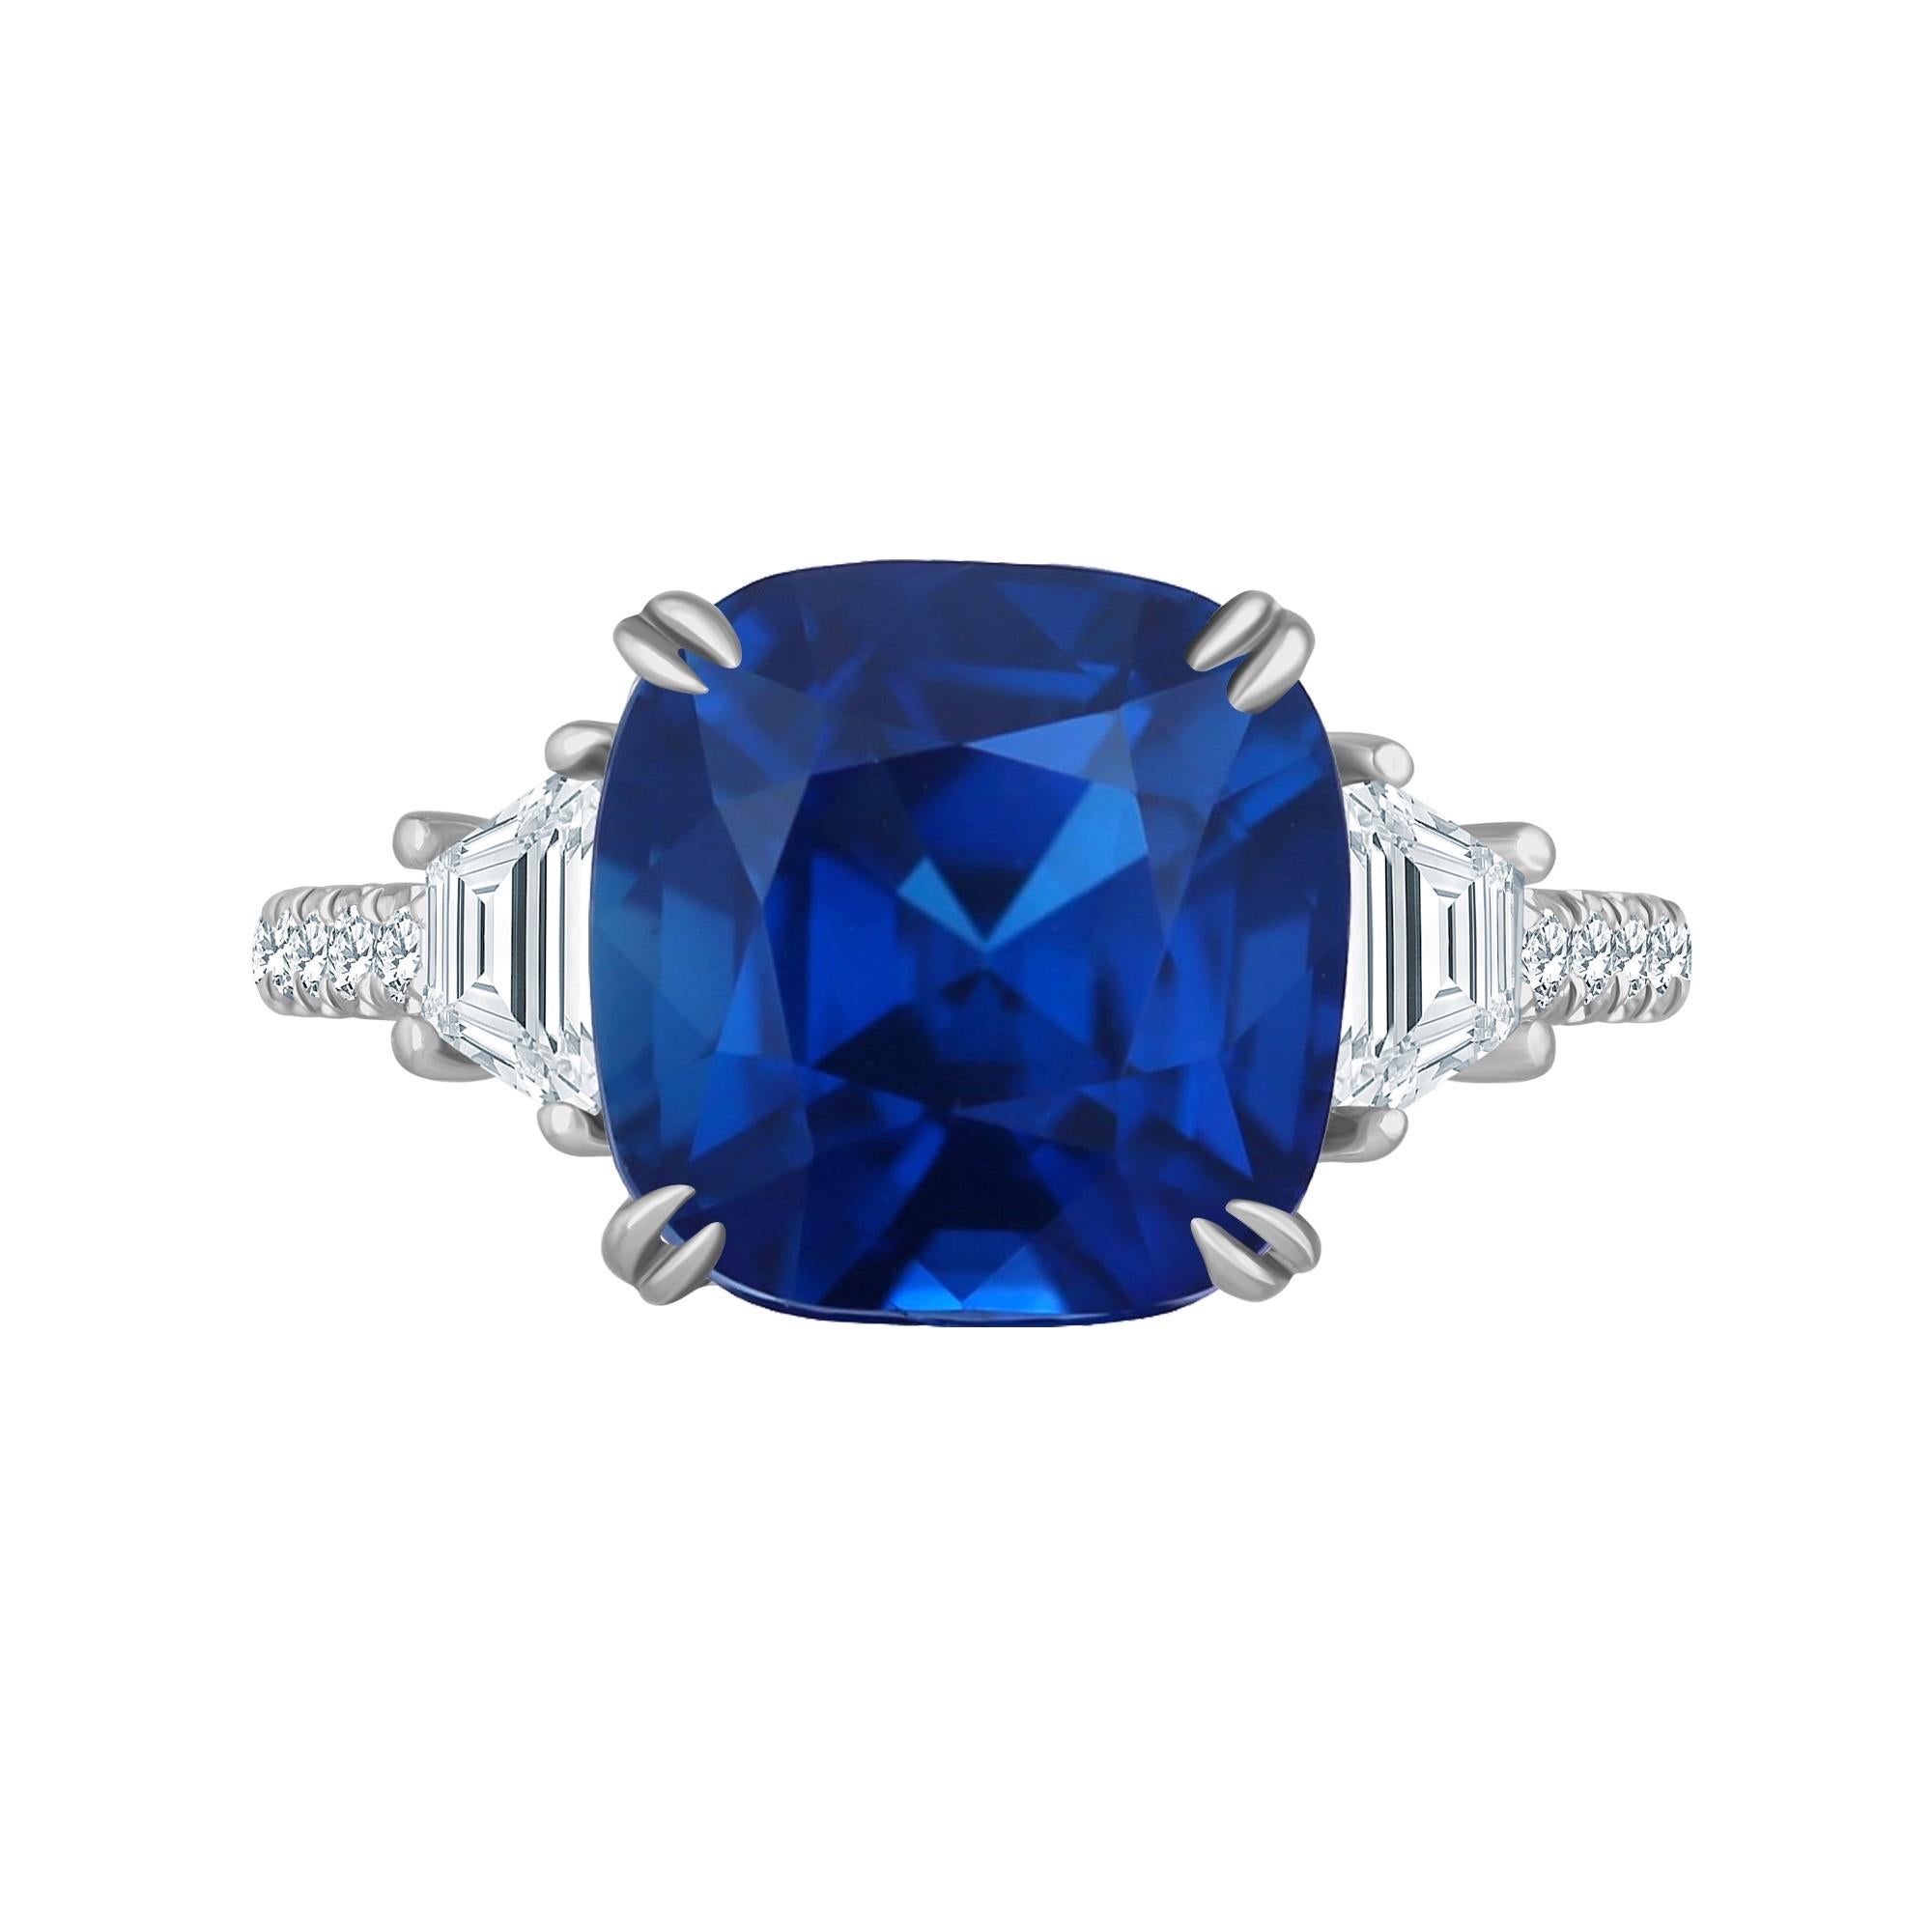 En provenance du coffre-fort d'Emilio ! Jewelry New York,
Fabriqué à la main en platine, il met en valeur un magnifique saphir dont le certificat indique qu'il est de couleur bleu royal. Renseignez-vous pour plus de détails ! Le poids total est